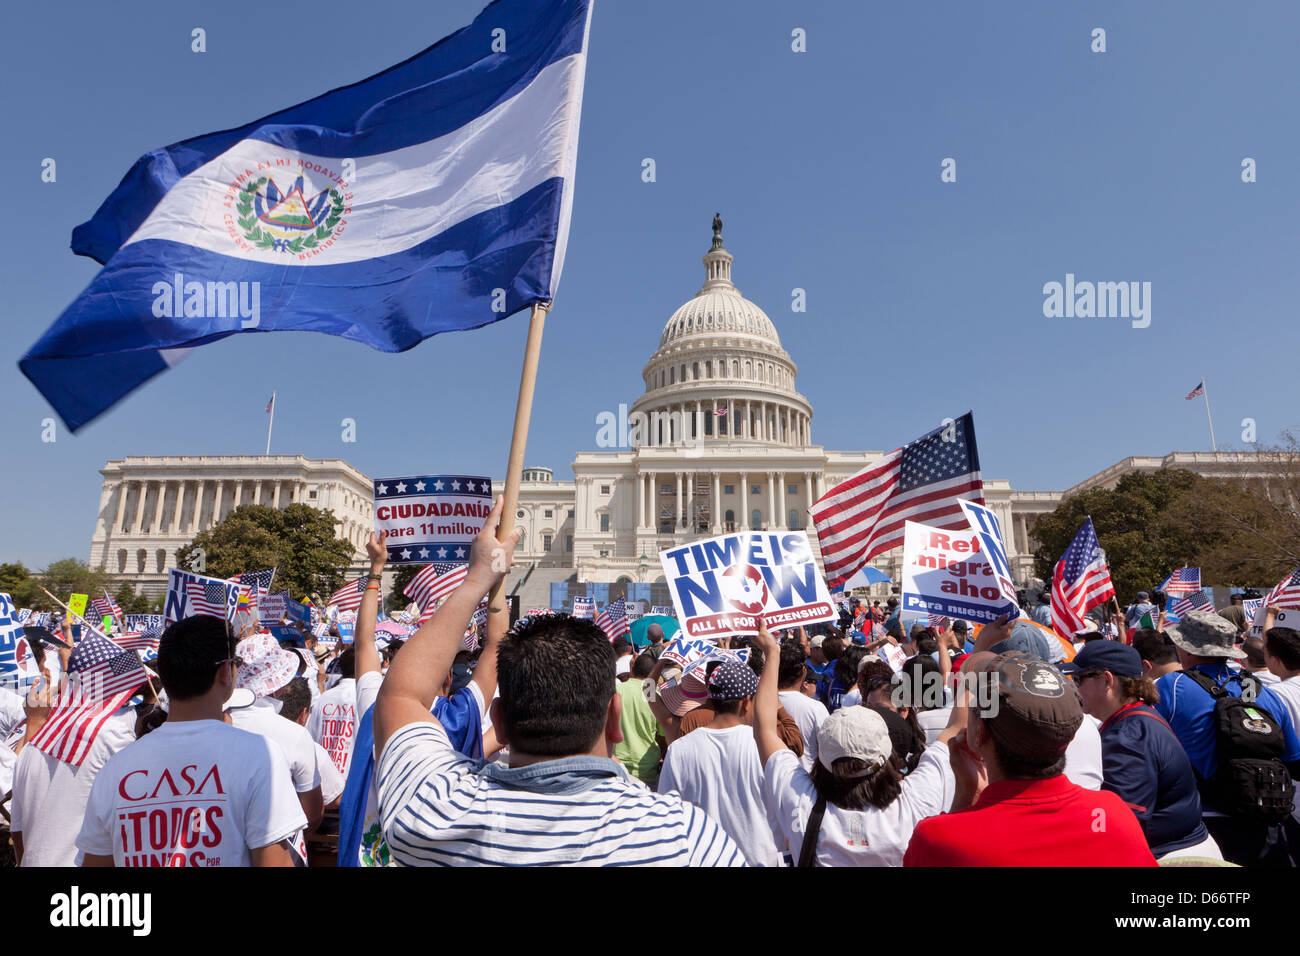 L'homme qui agitait un drapeau drapeau d'El Salvador au Capitole au cours de la réforme de l'immigration rally - Washington, DC USA Banque D'Images